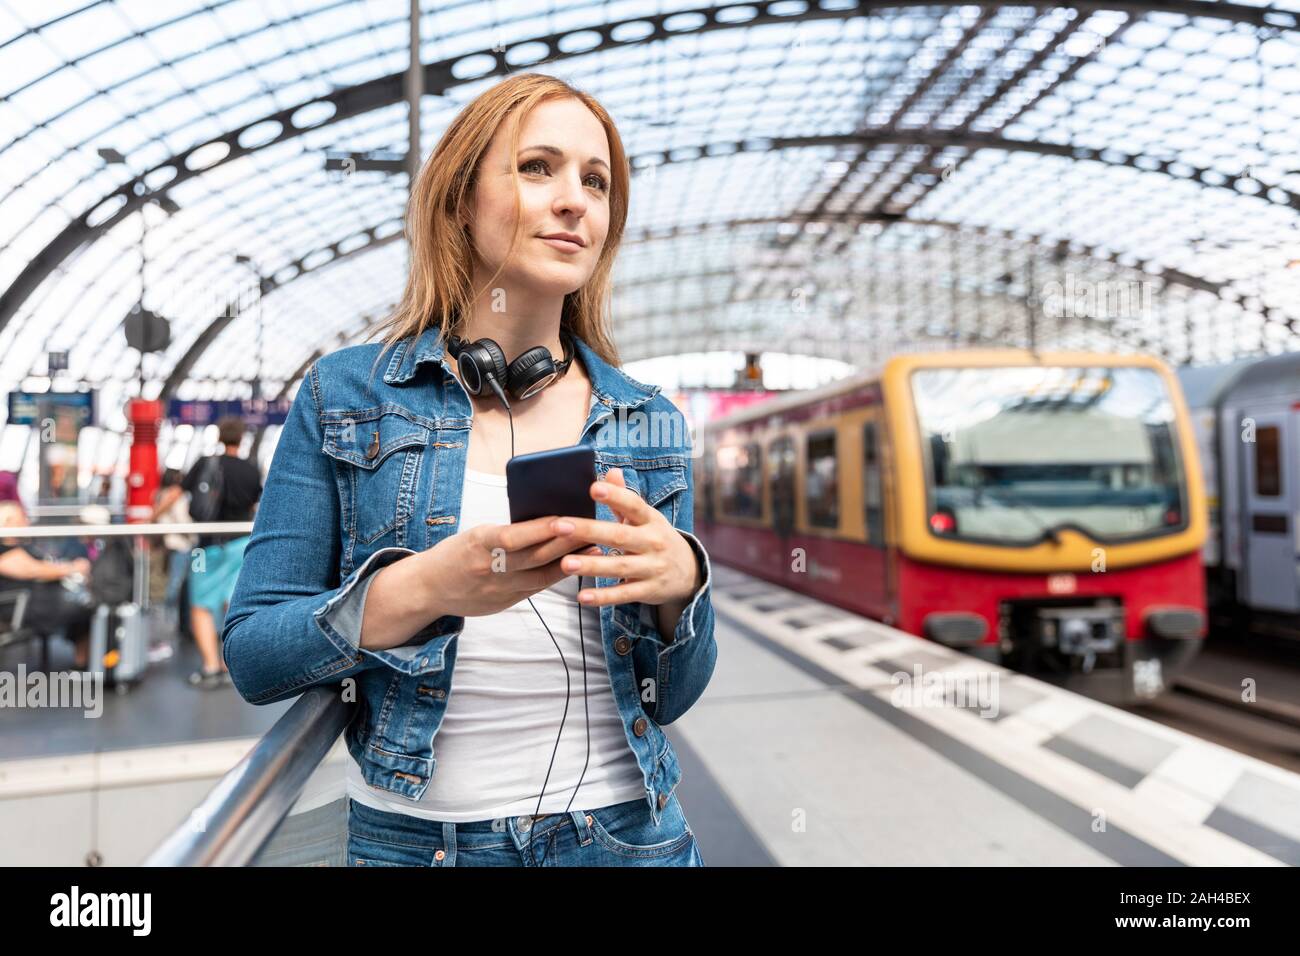 Smiling woman with smartphone et casque sur la plate-forme de station, Berlin, Allemagne Banque D'Images